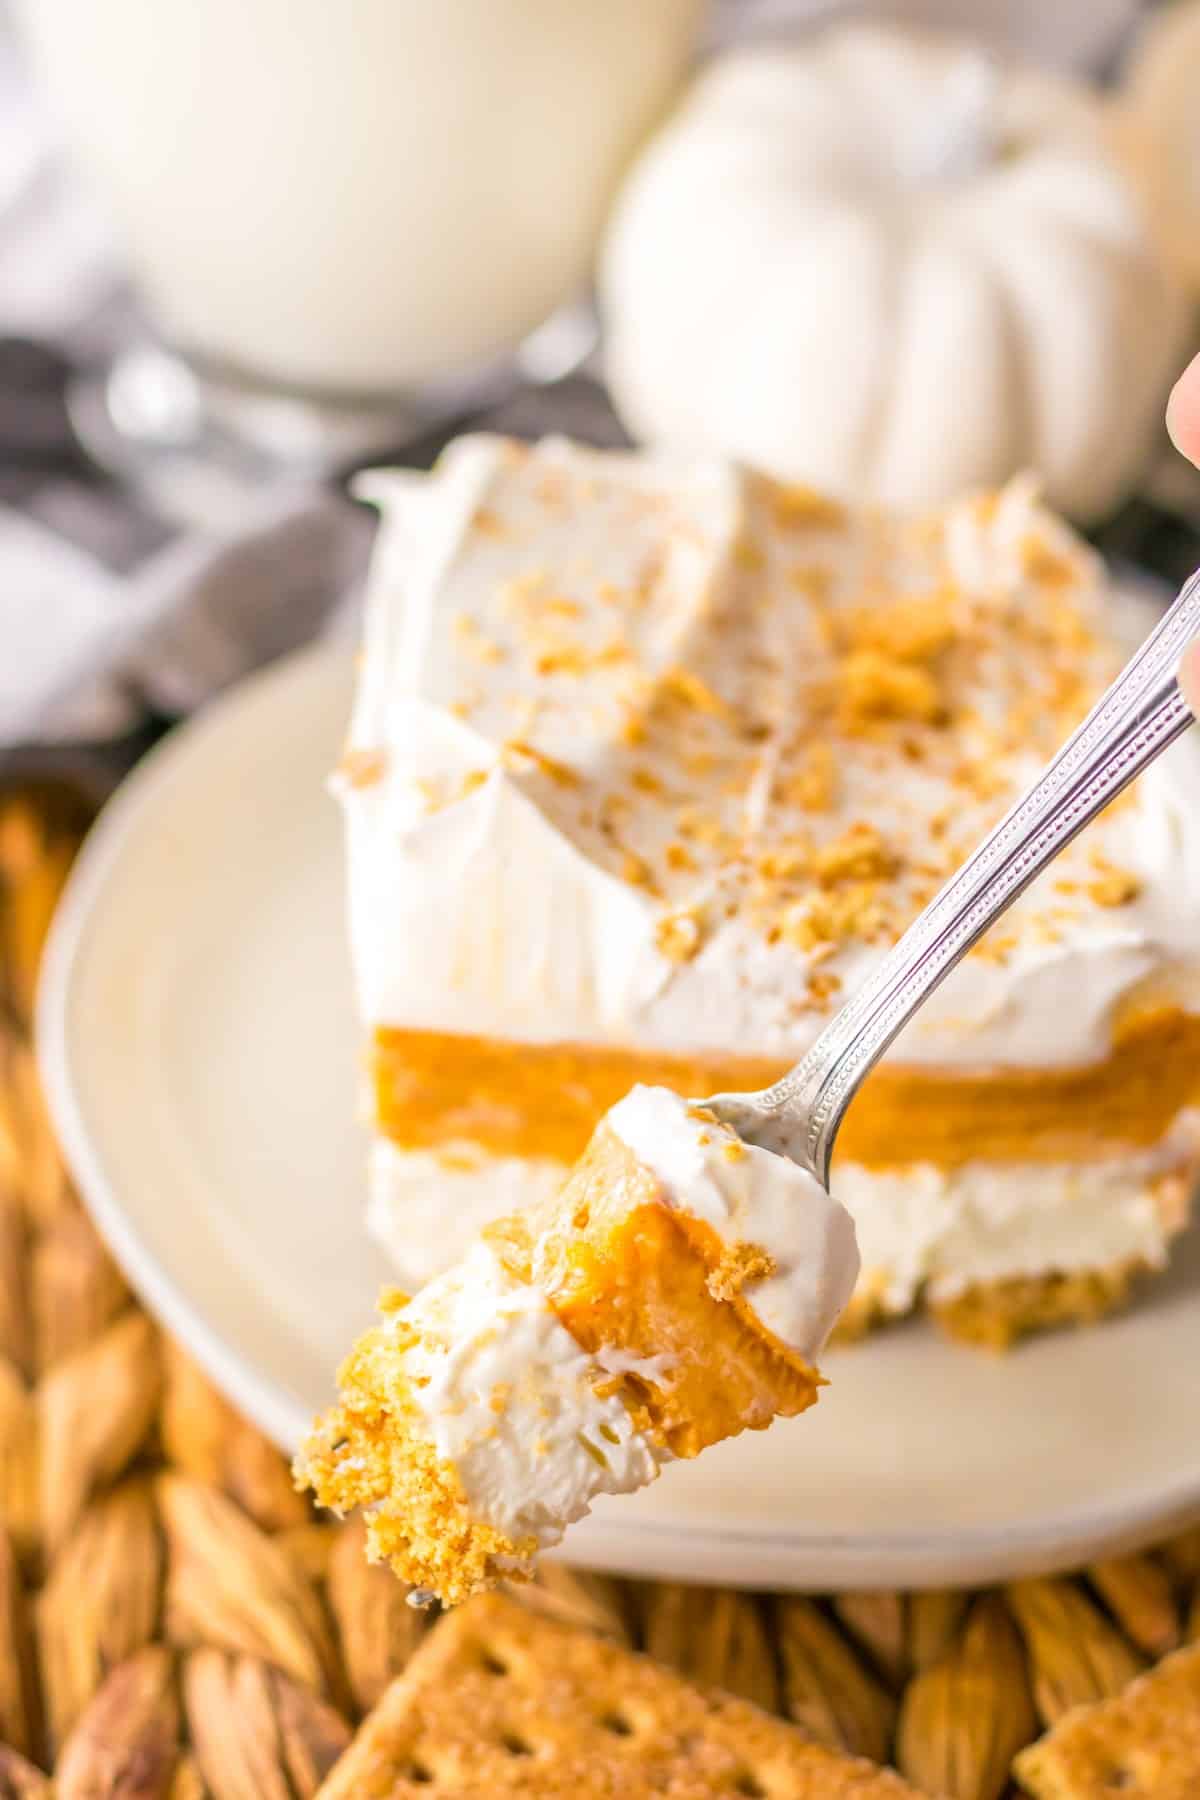 A forkful of layered pumpkin dessert.